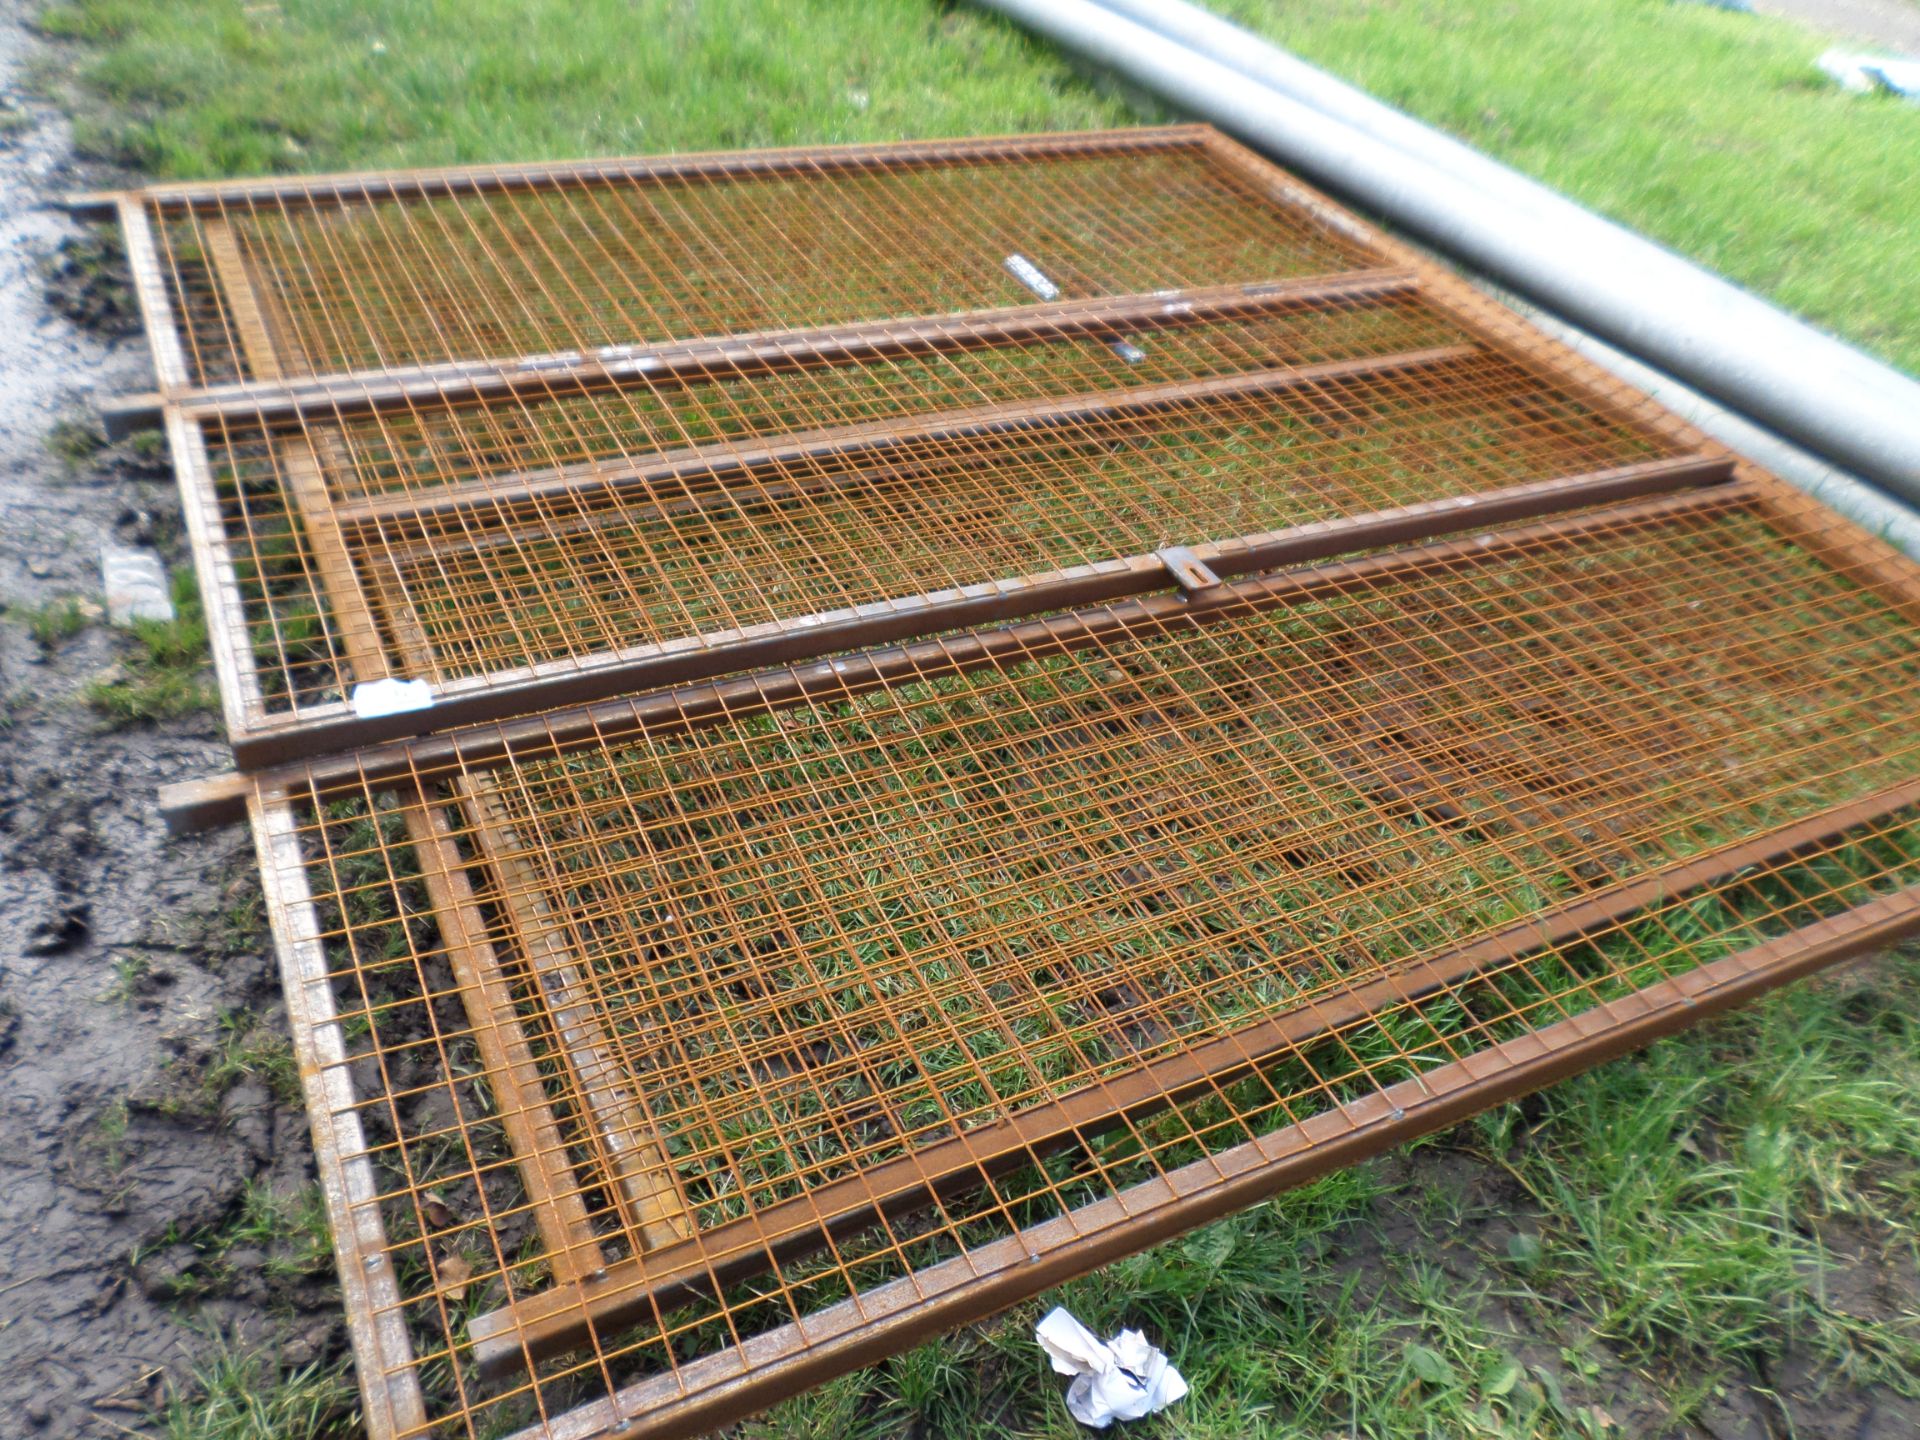 Steel mesh 3 panels NO VAT - Image 2 of 2